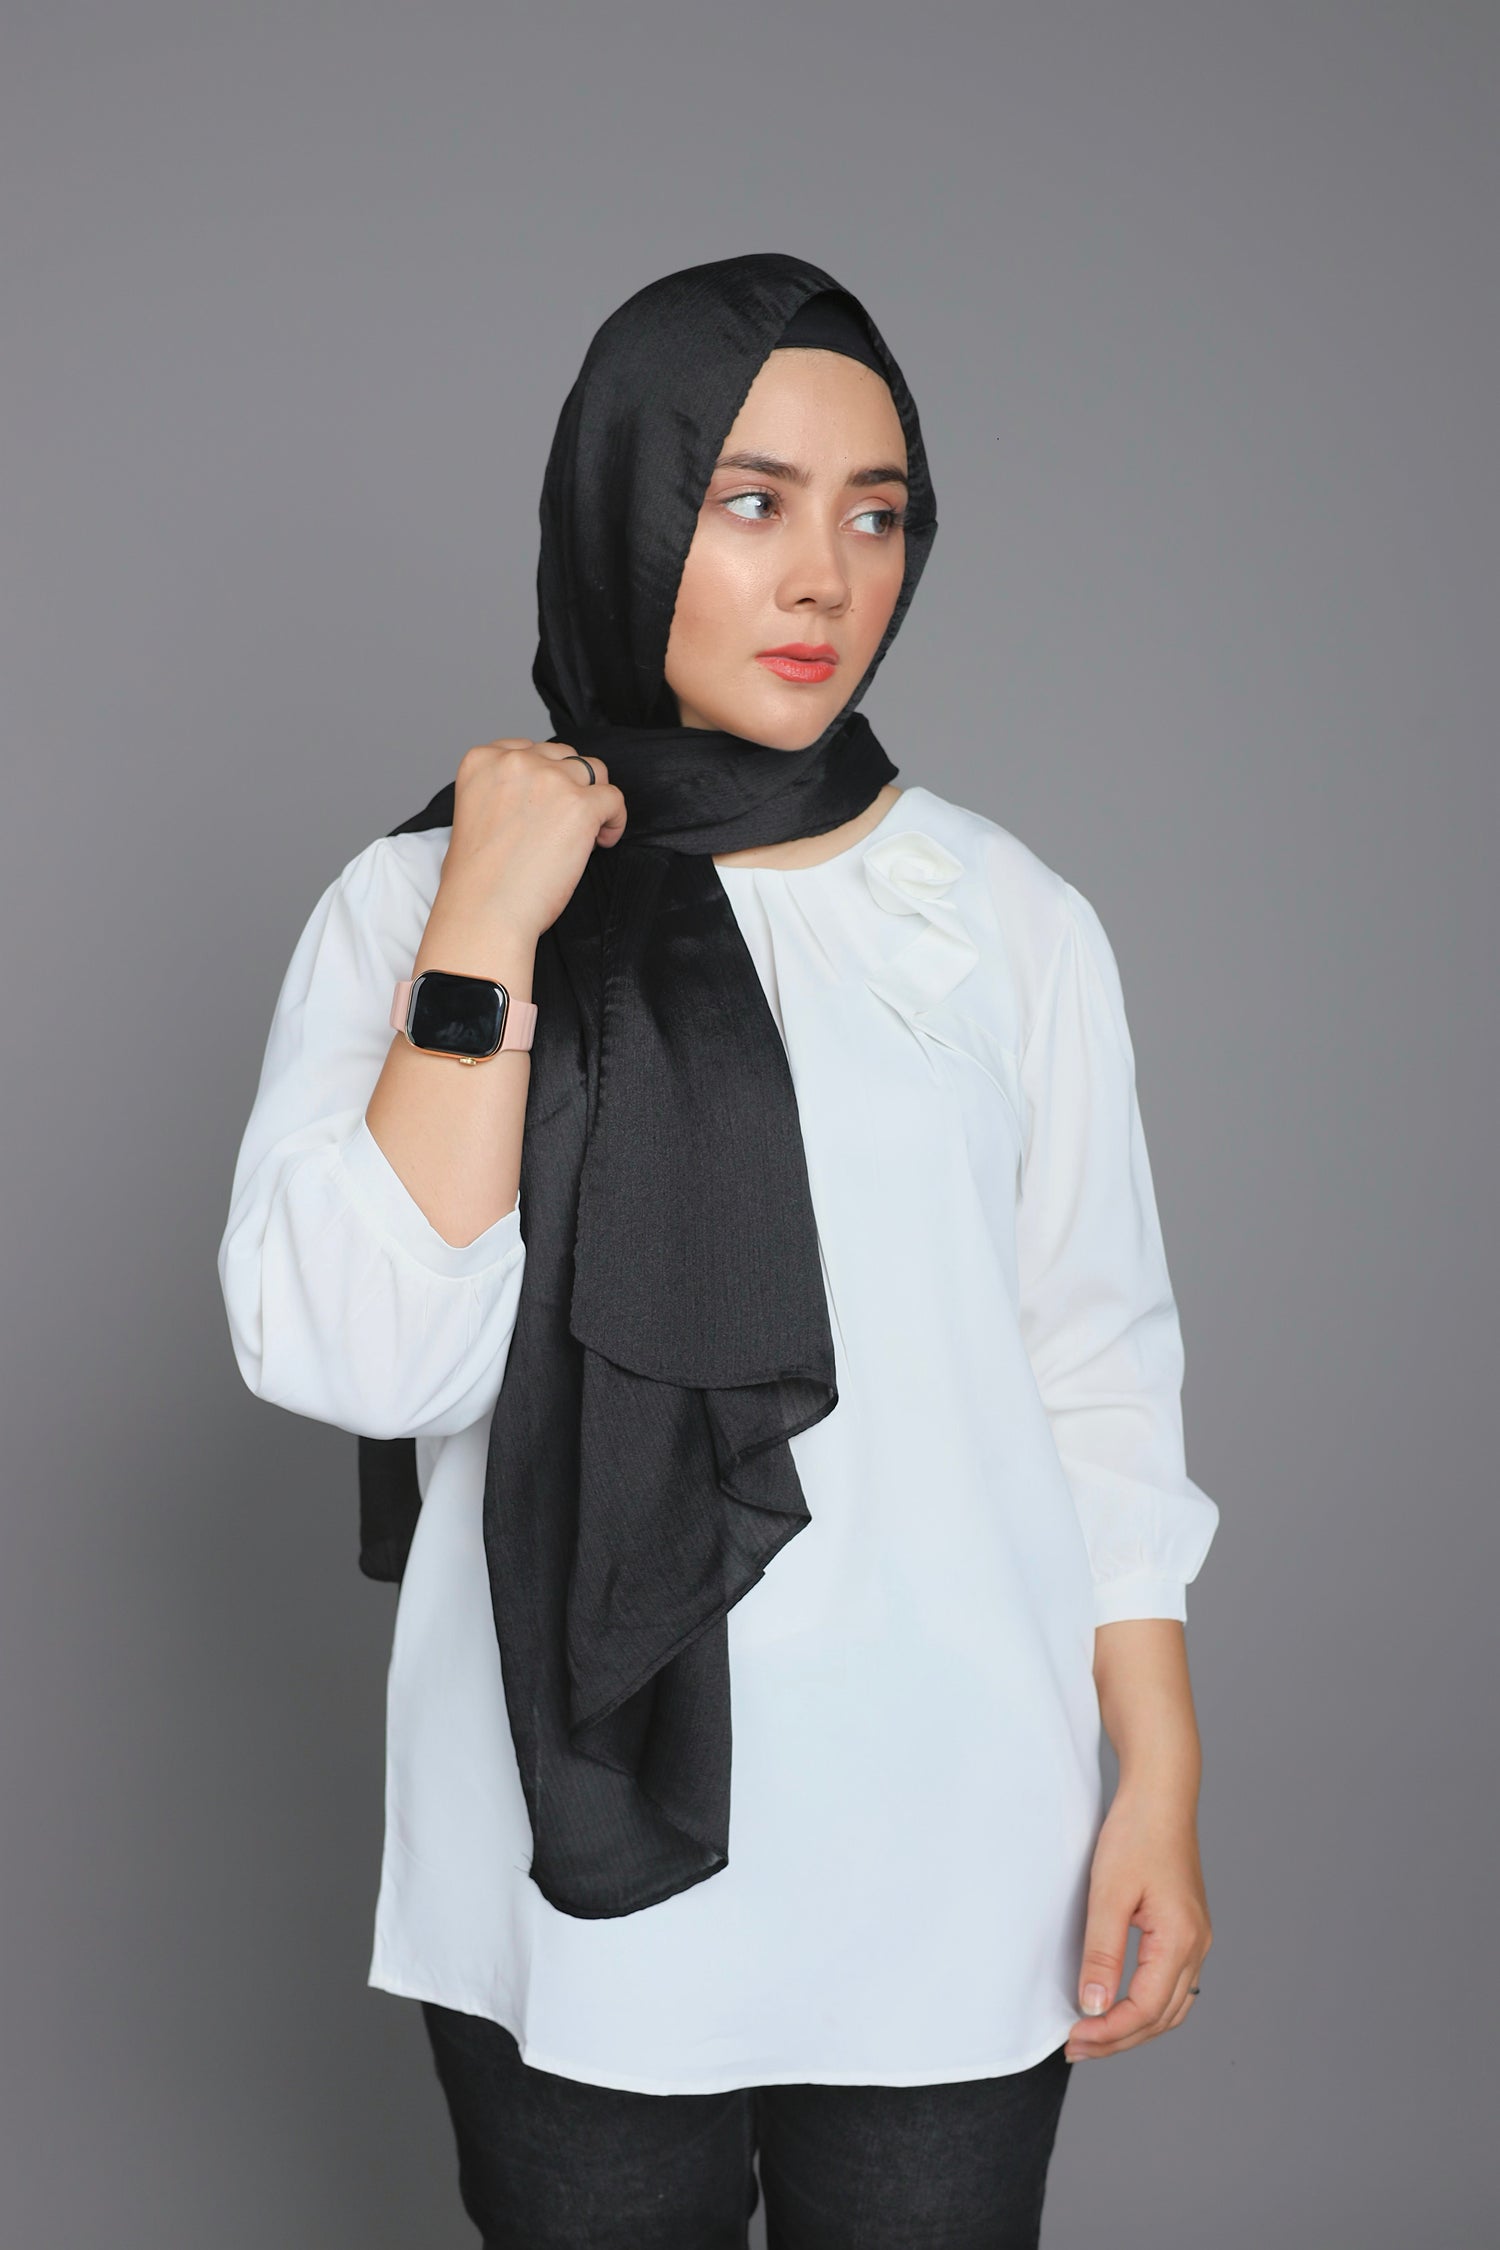 Metallic Chiffon Hijab in Black Diamond